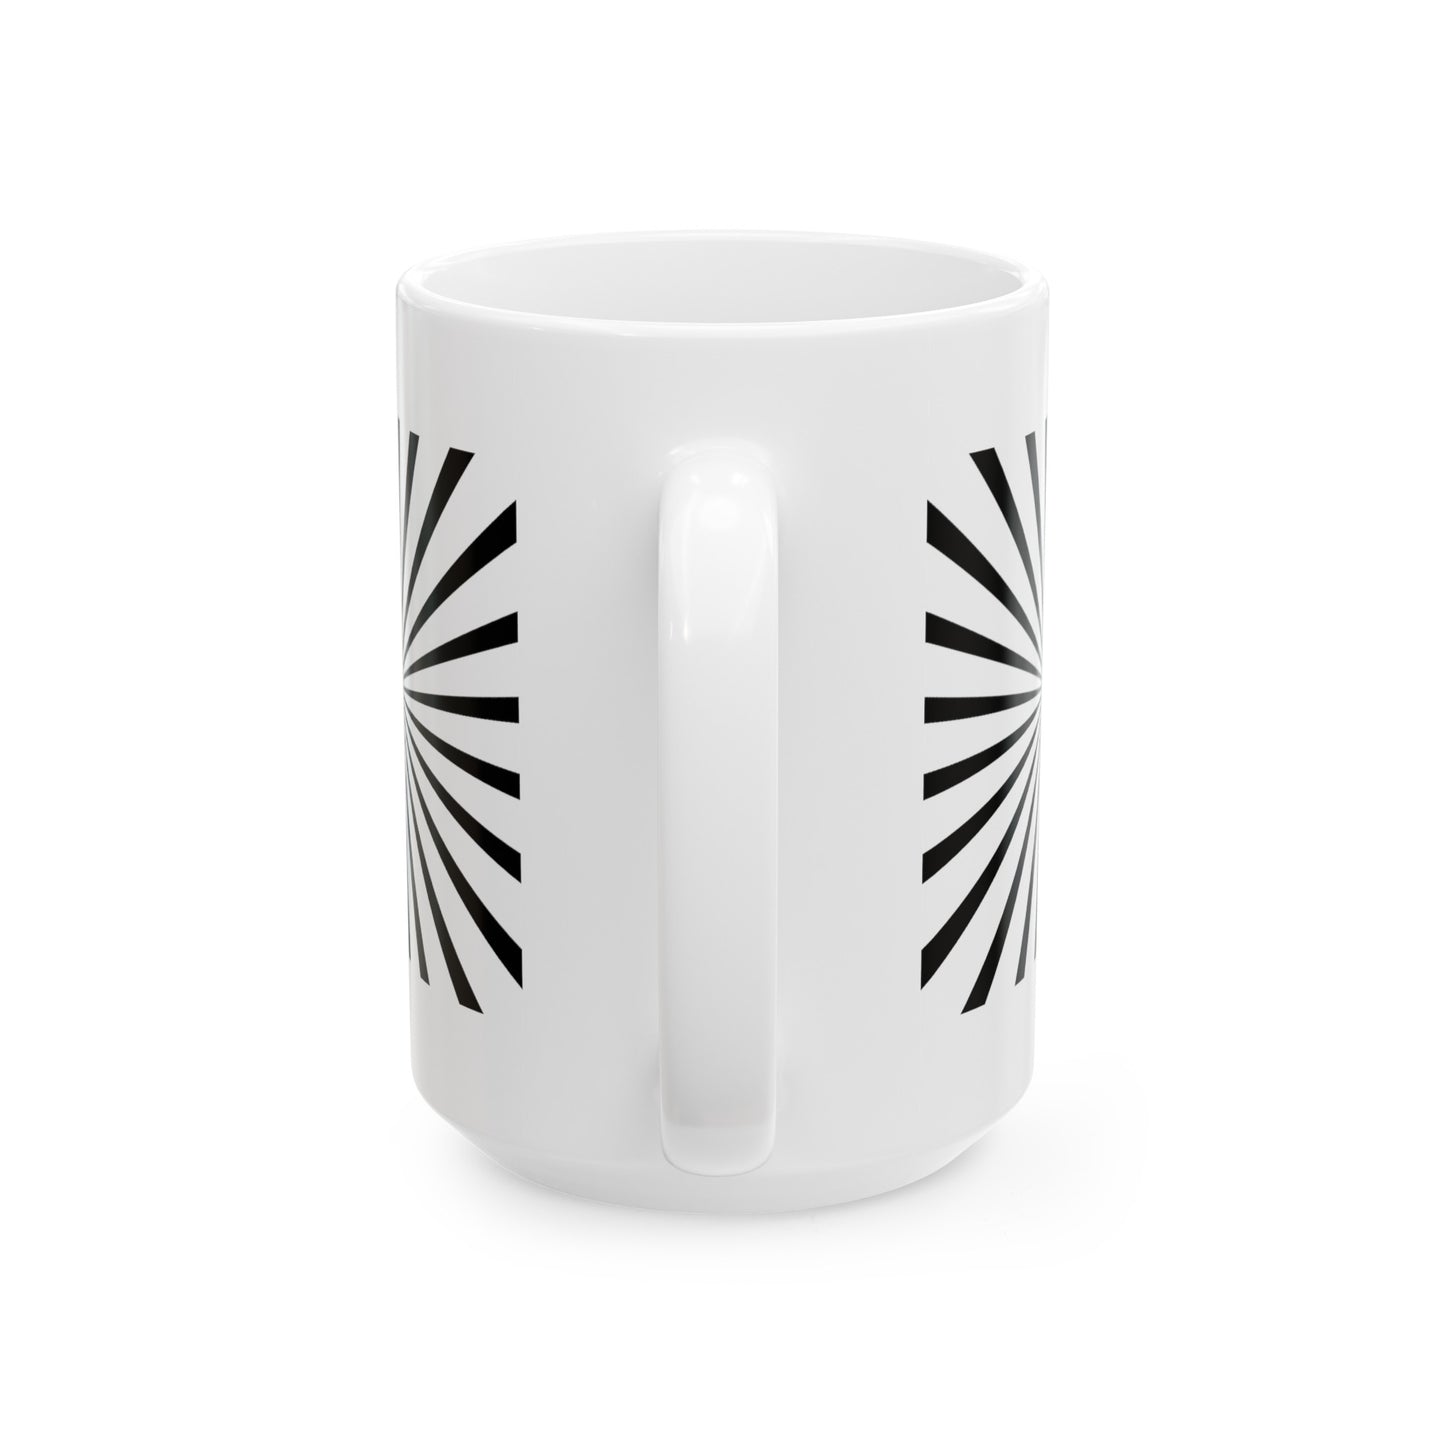 Hypnotize Coffee Mug - Dobule Sided White Ceramic 15oz by TheGlassyLass.com